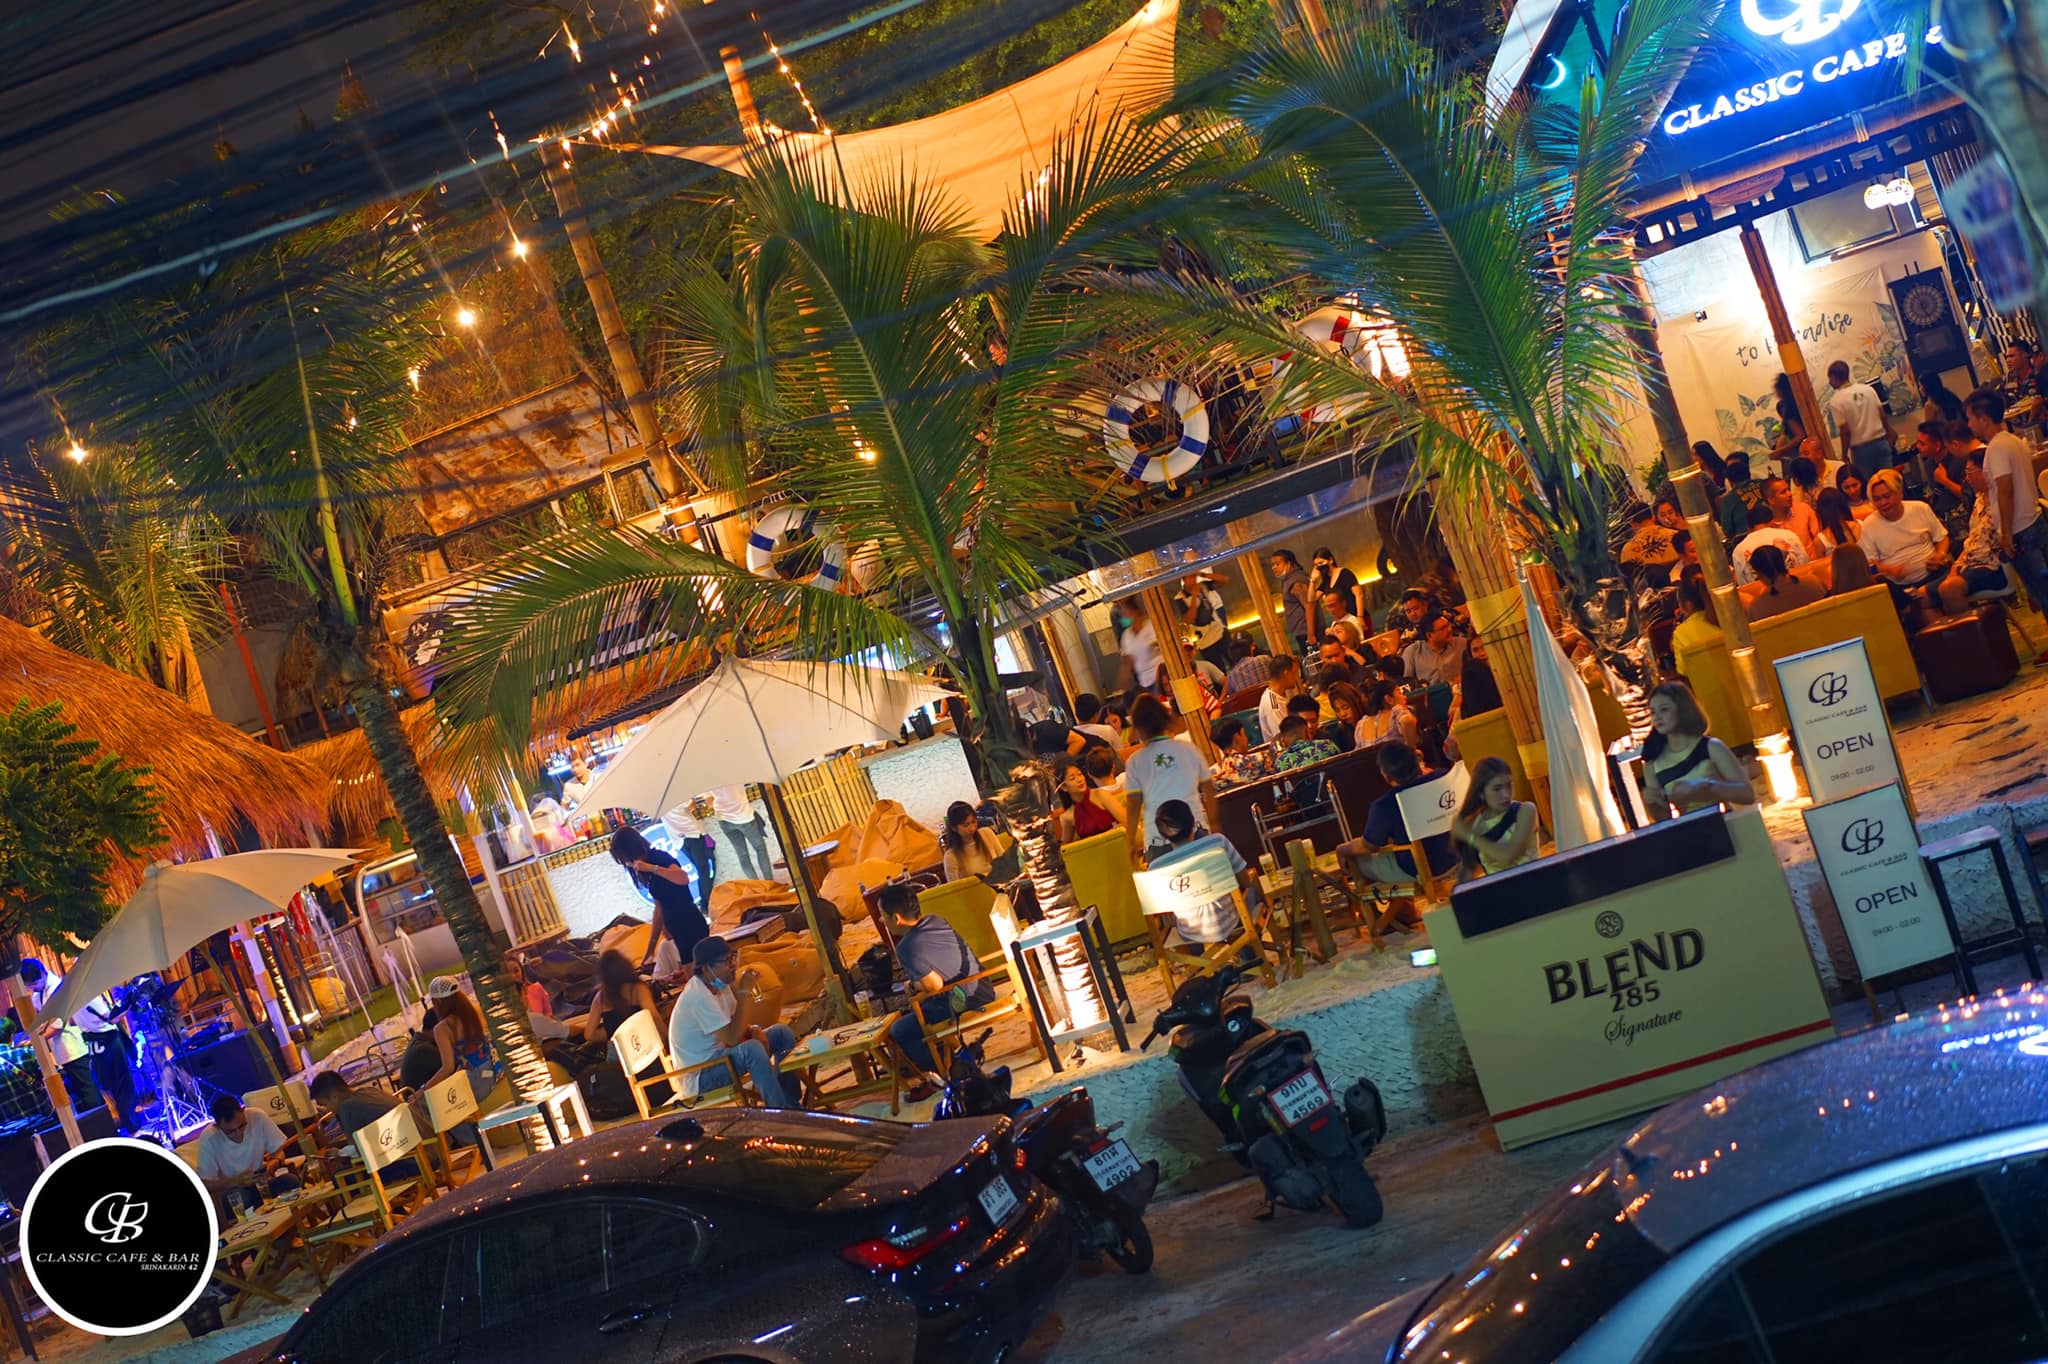 Classic Cafe & Bar Srinakarin (Classic Cafe & Bar Srinakarin) : กรุงเทพมหานคร (Bangkok)